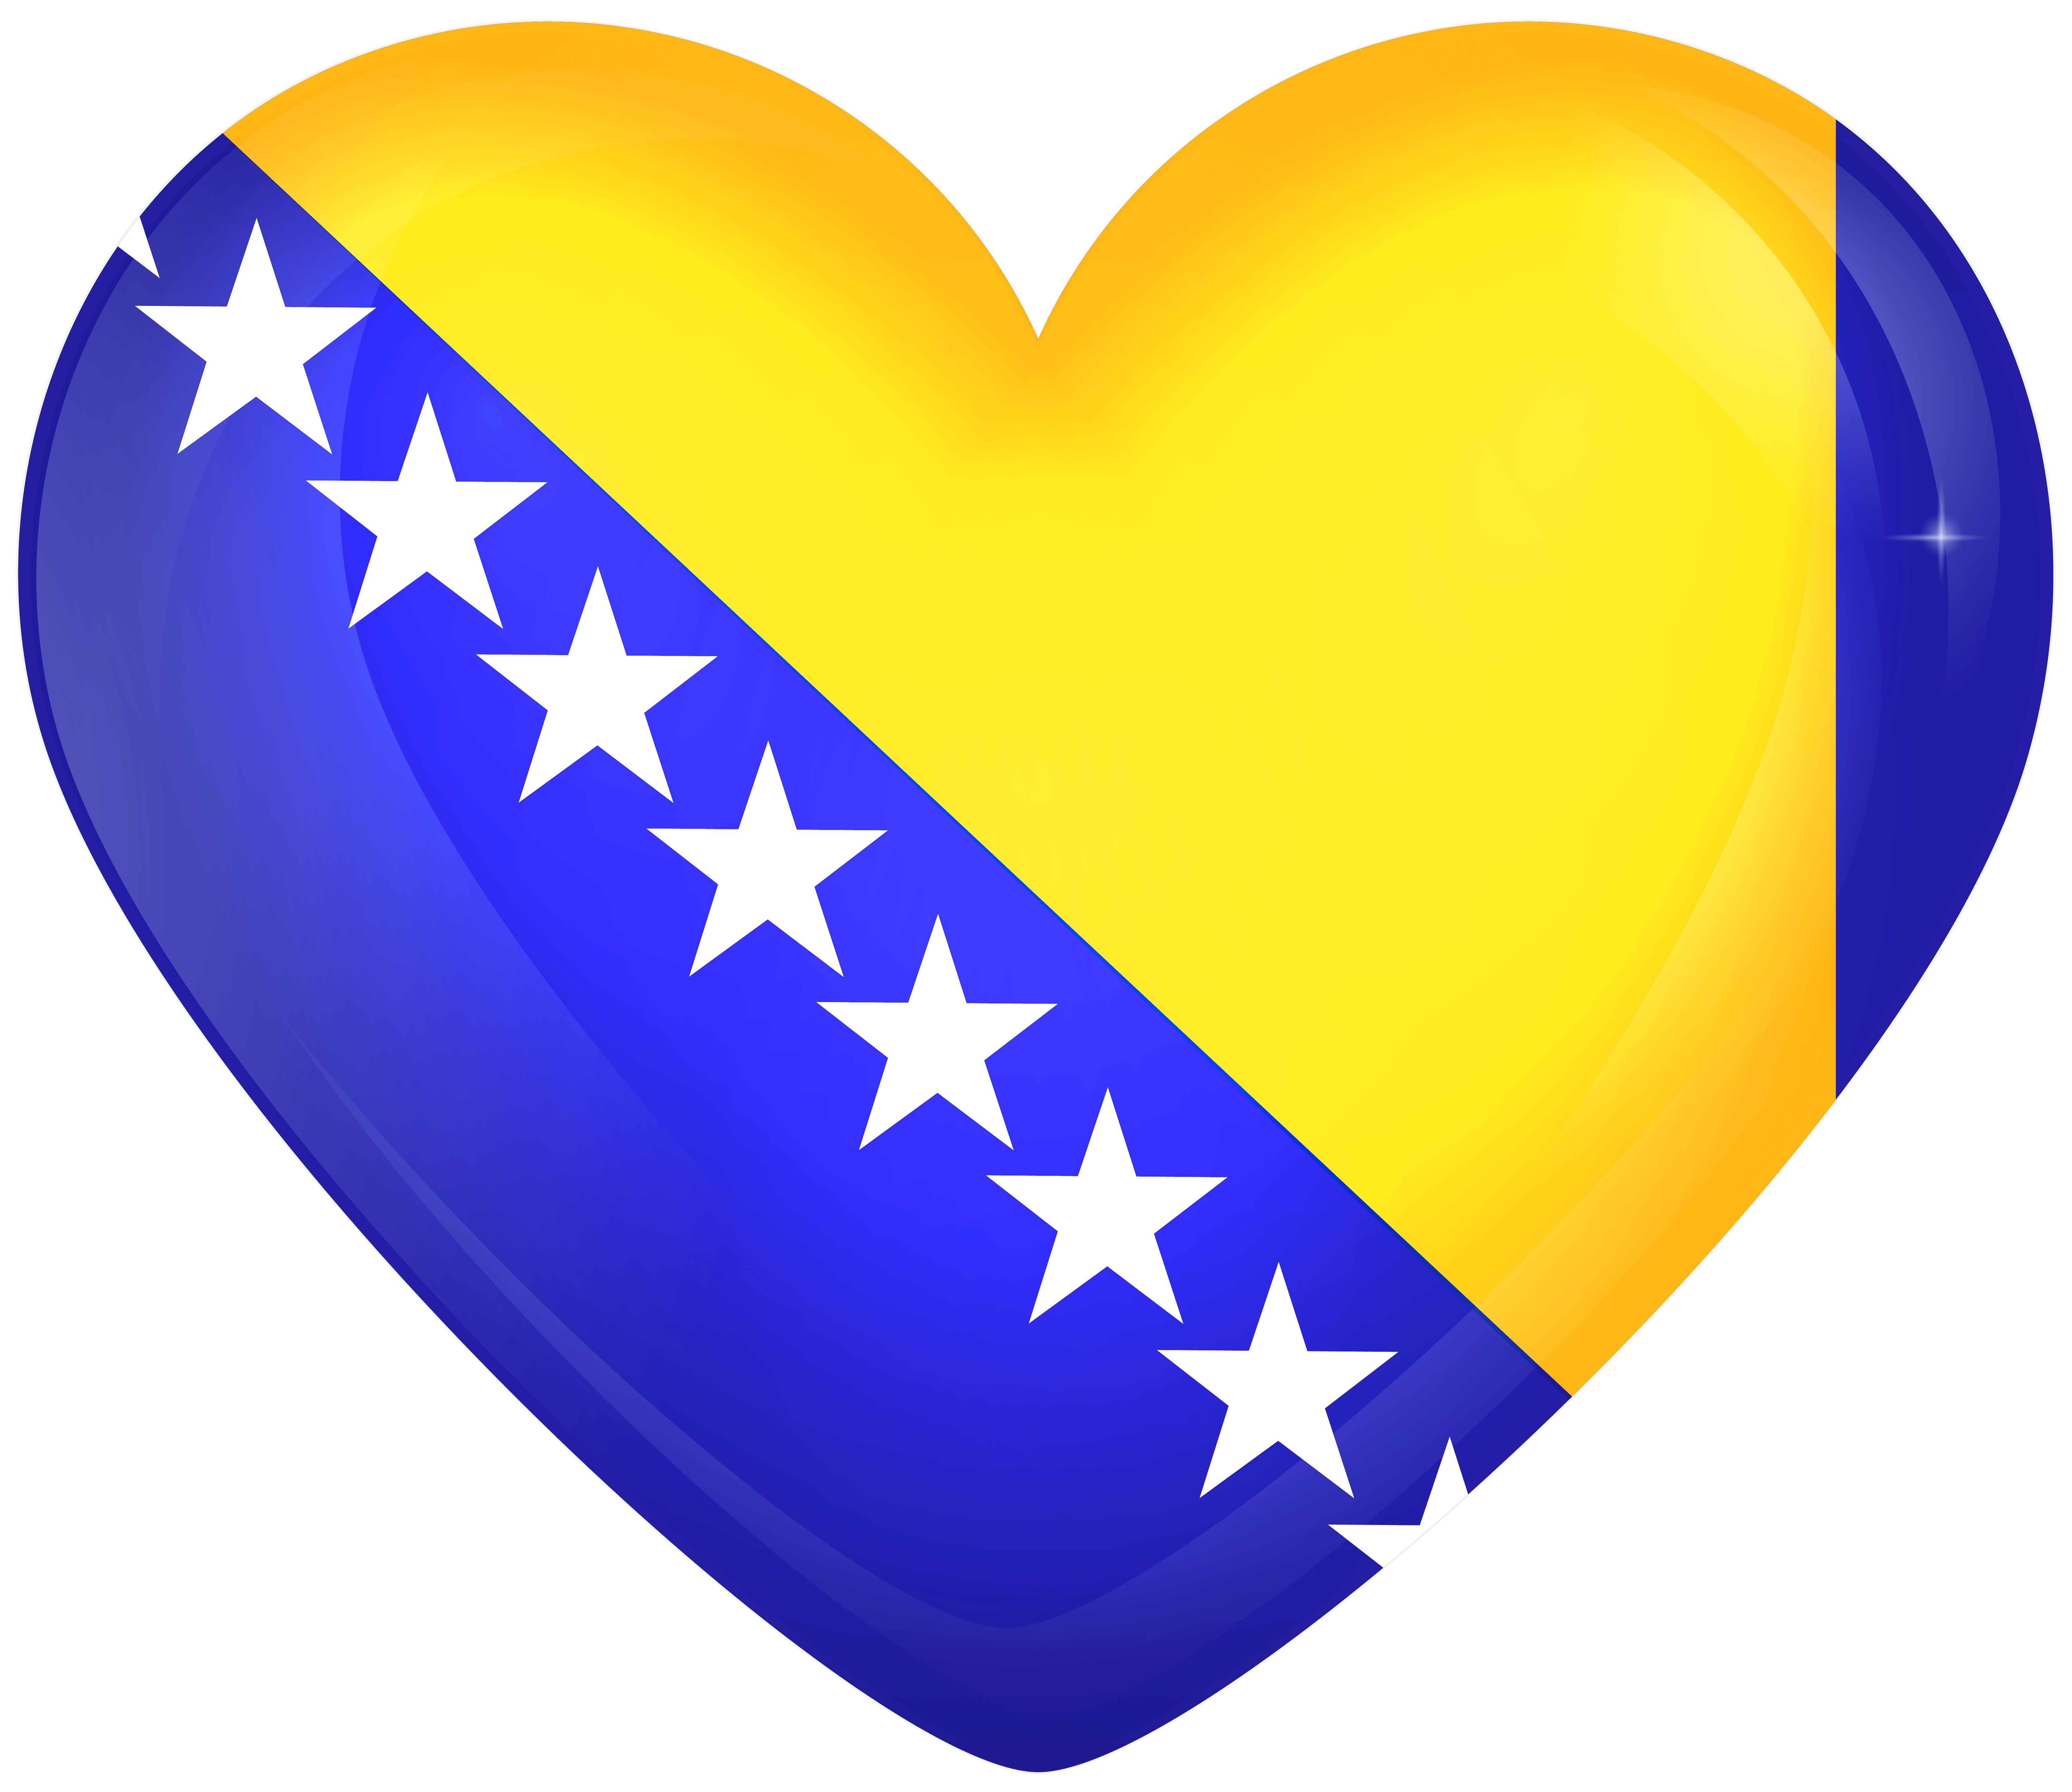 Bosnia and Herzegovina Large Heart Flag